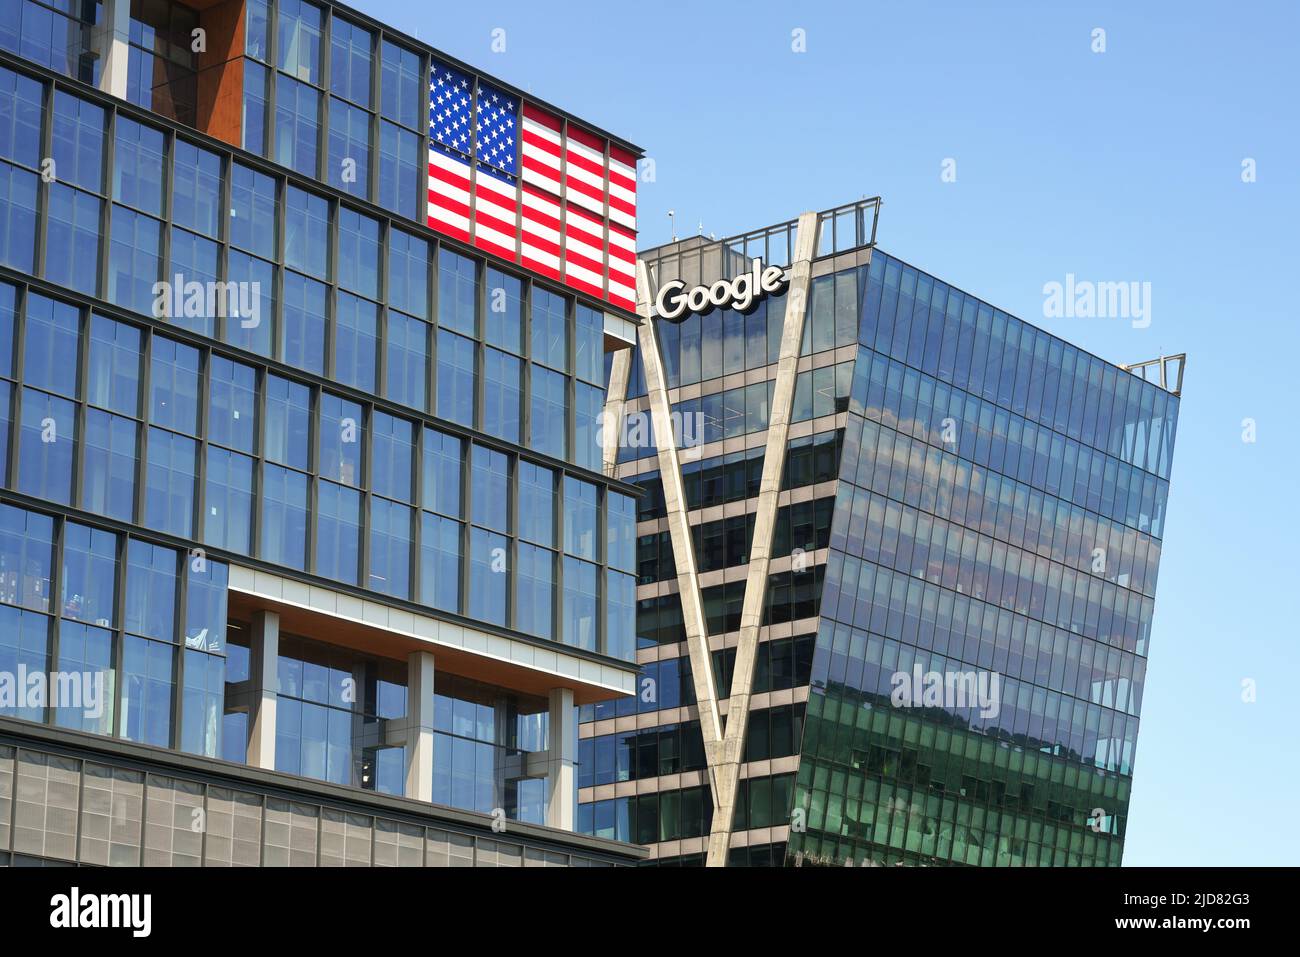 Google a Reston, Virginia, Stati Uniti. Uffici Google nell'edificio della stazione di Reston. Bandiera degli Stati Uniti in costruzione. Washington, D.C., area metropolitana. Foto Stock